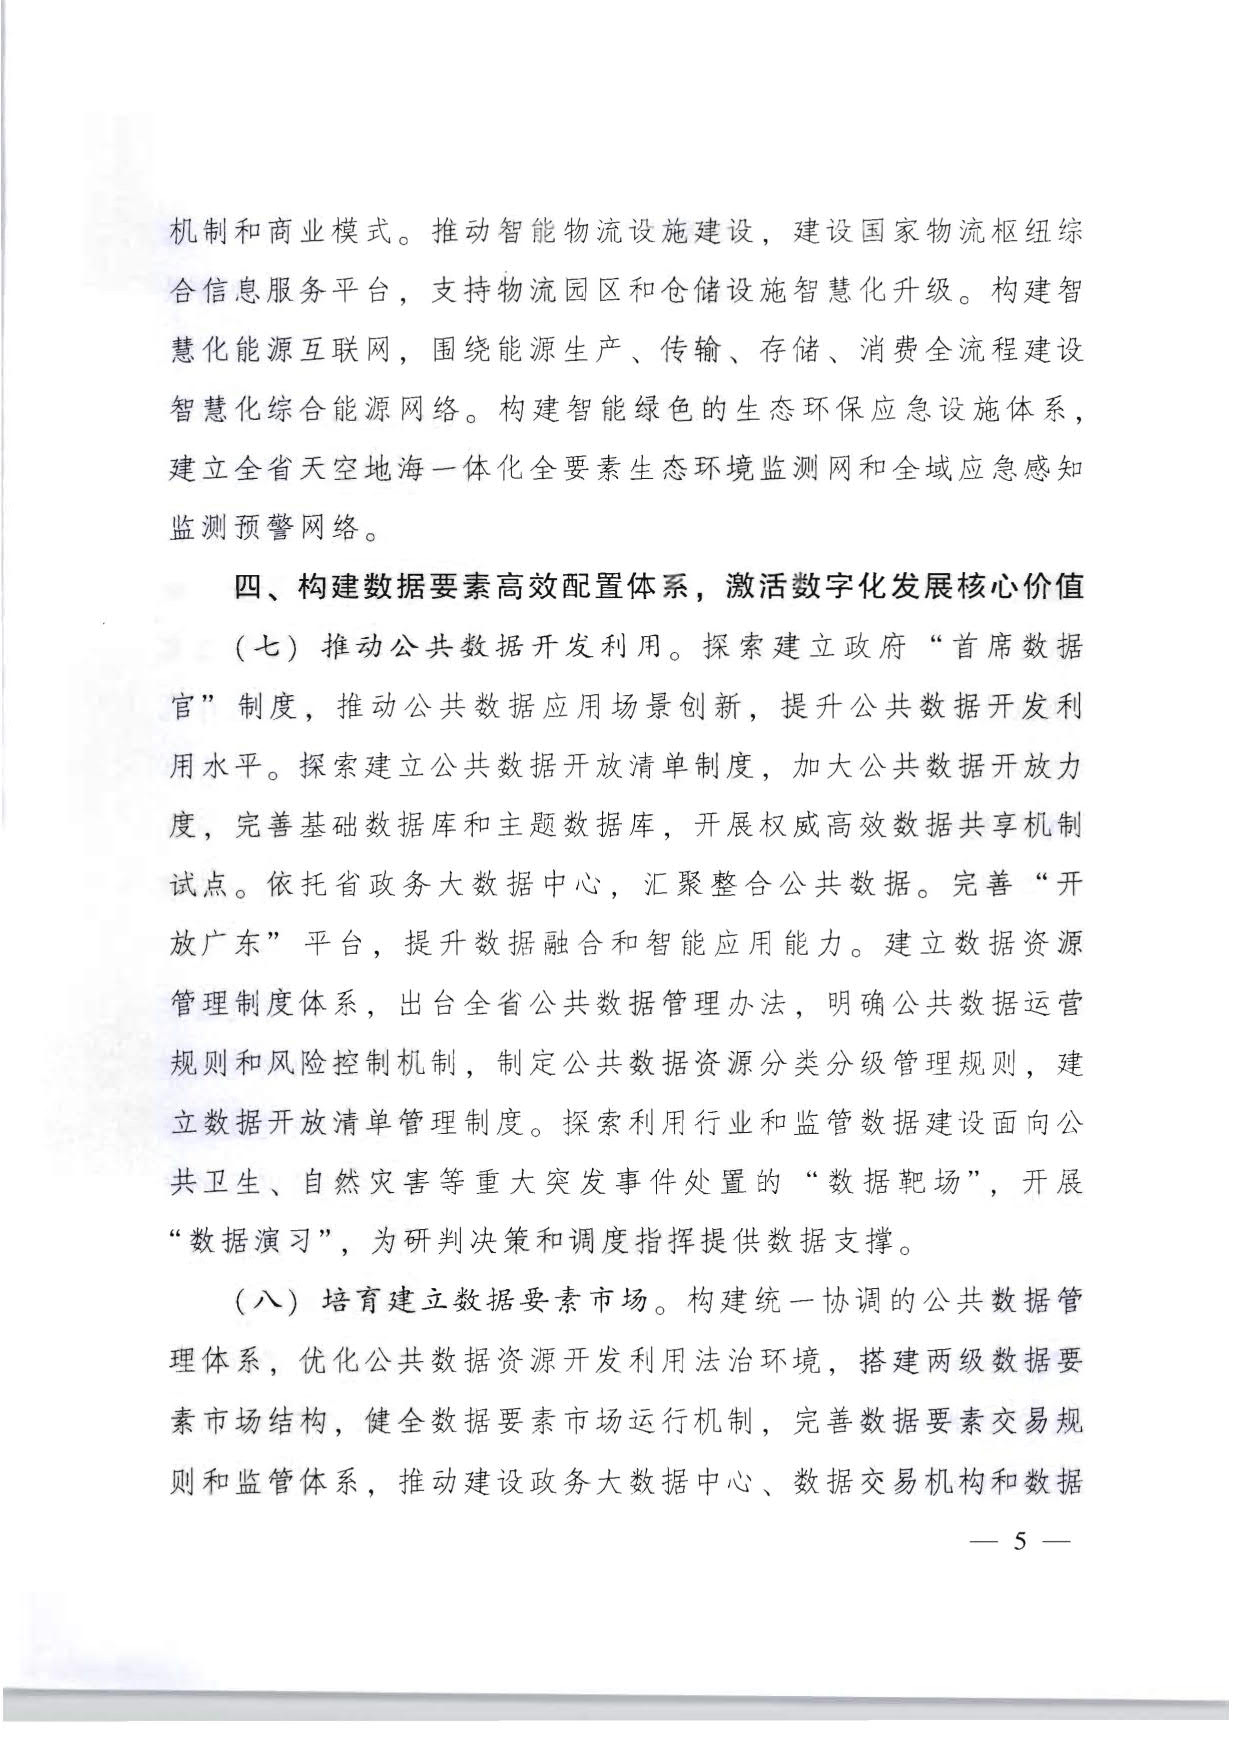 广东省人民政府关于加快数字化发展的意见_05.jpg